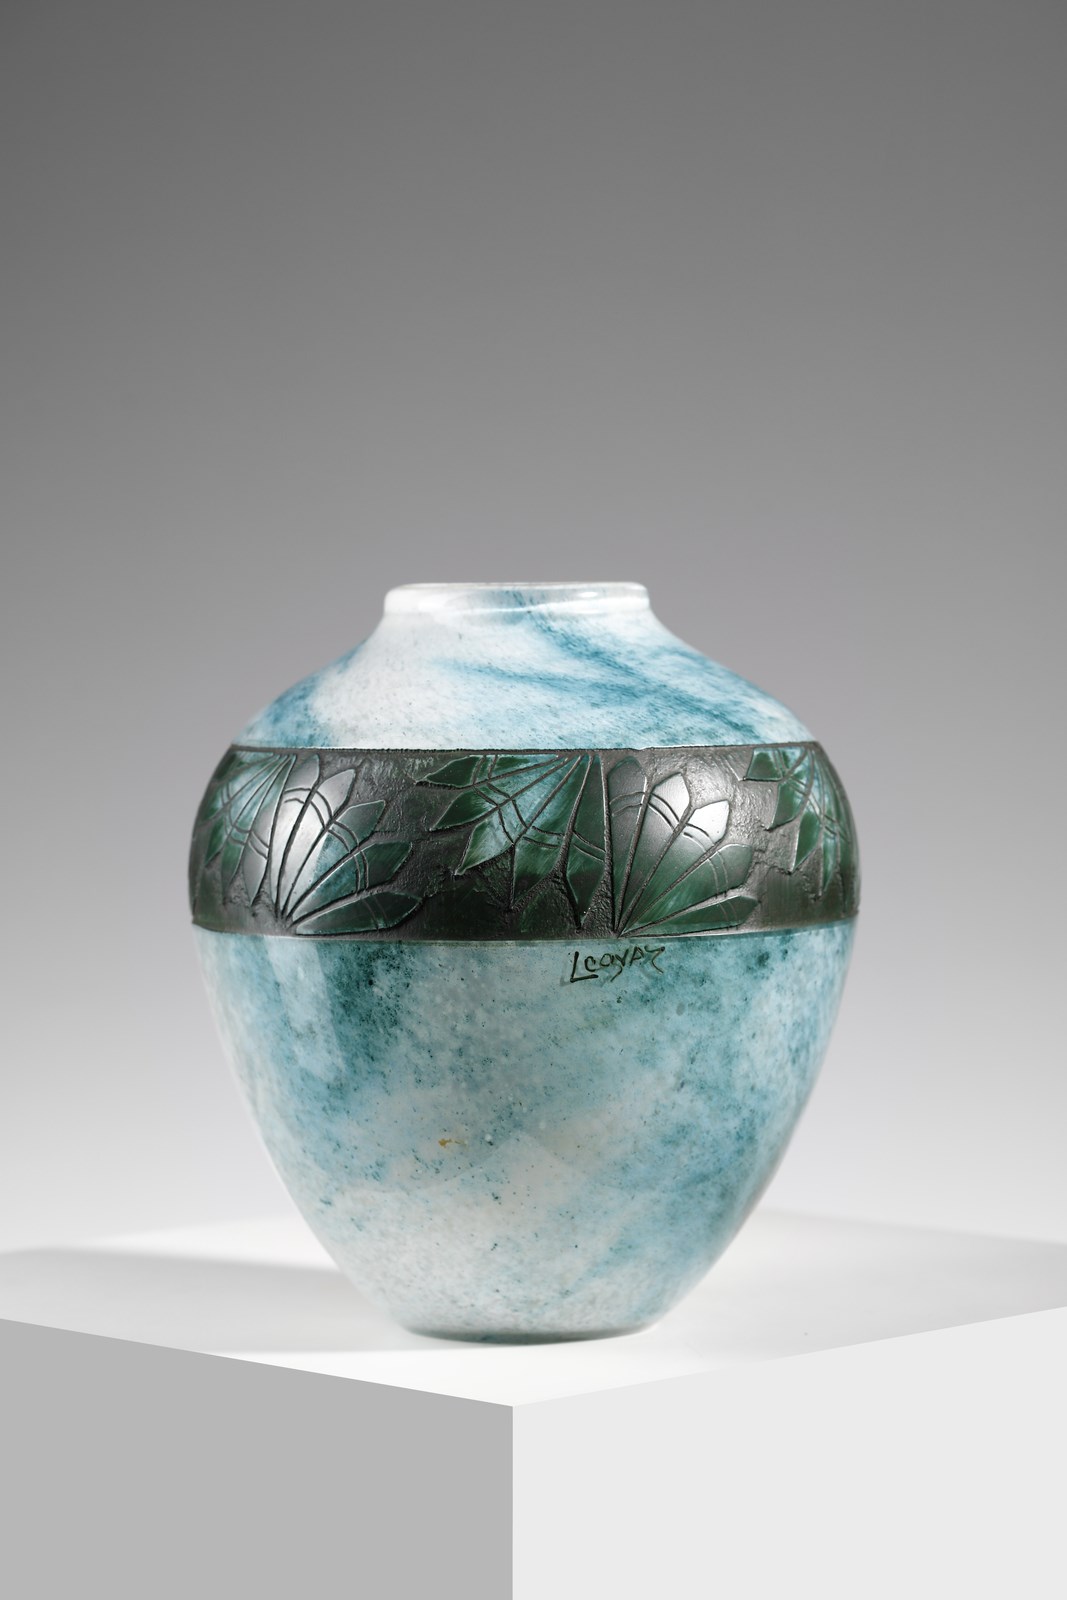 Vaso in vetro decorato con una fascia incisa all'acido con un motivo floreale, su fondo marmorizzato turchese ( Legras)